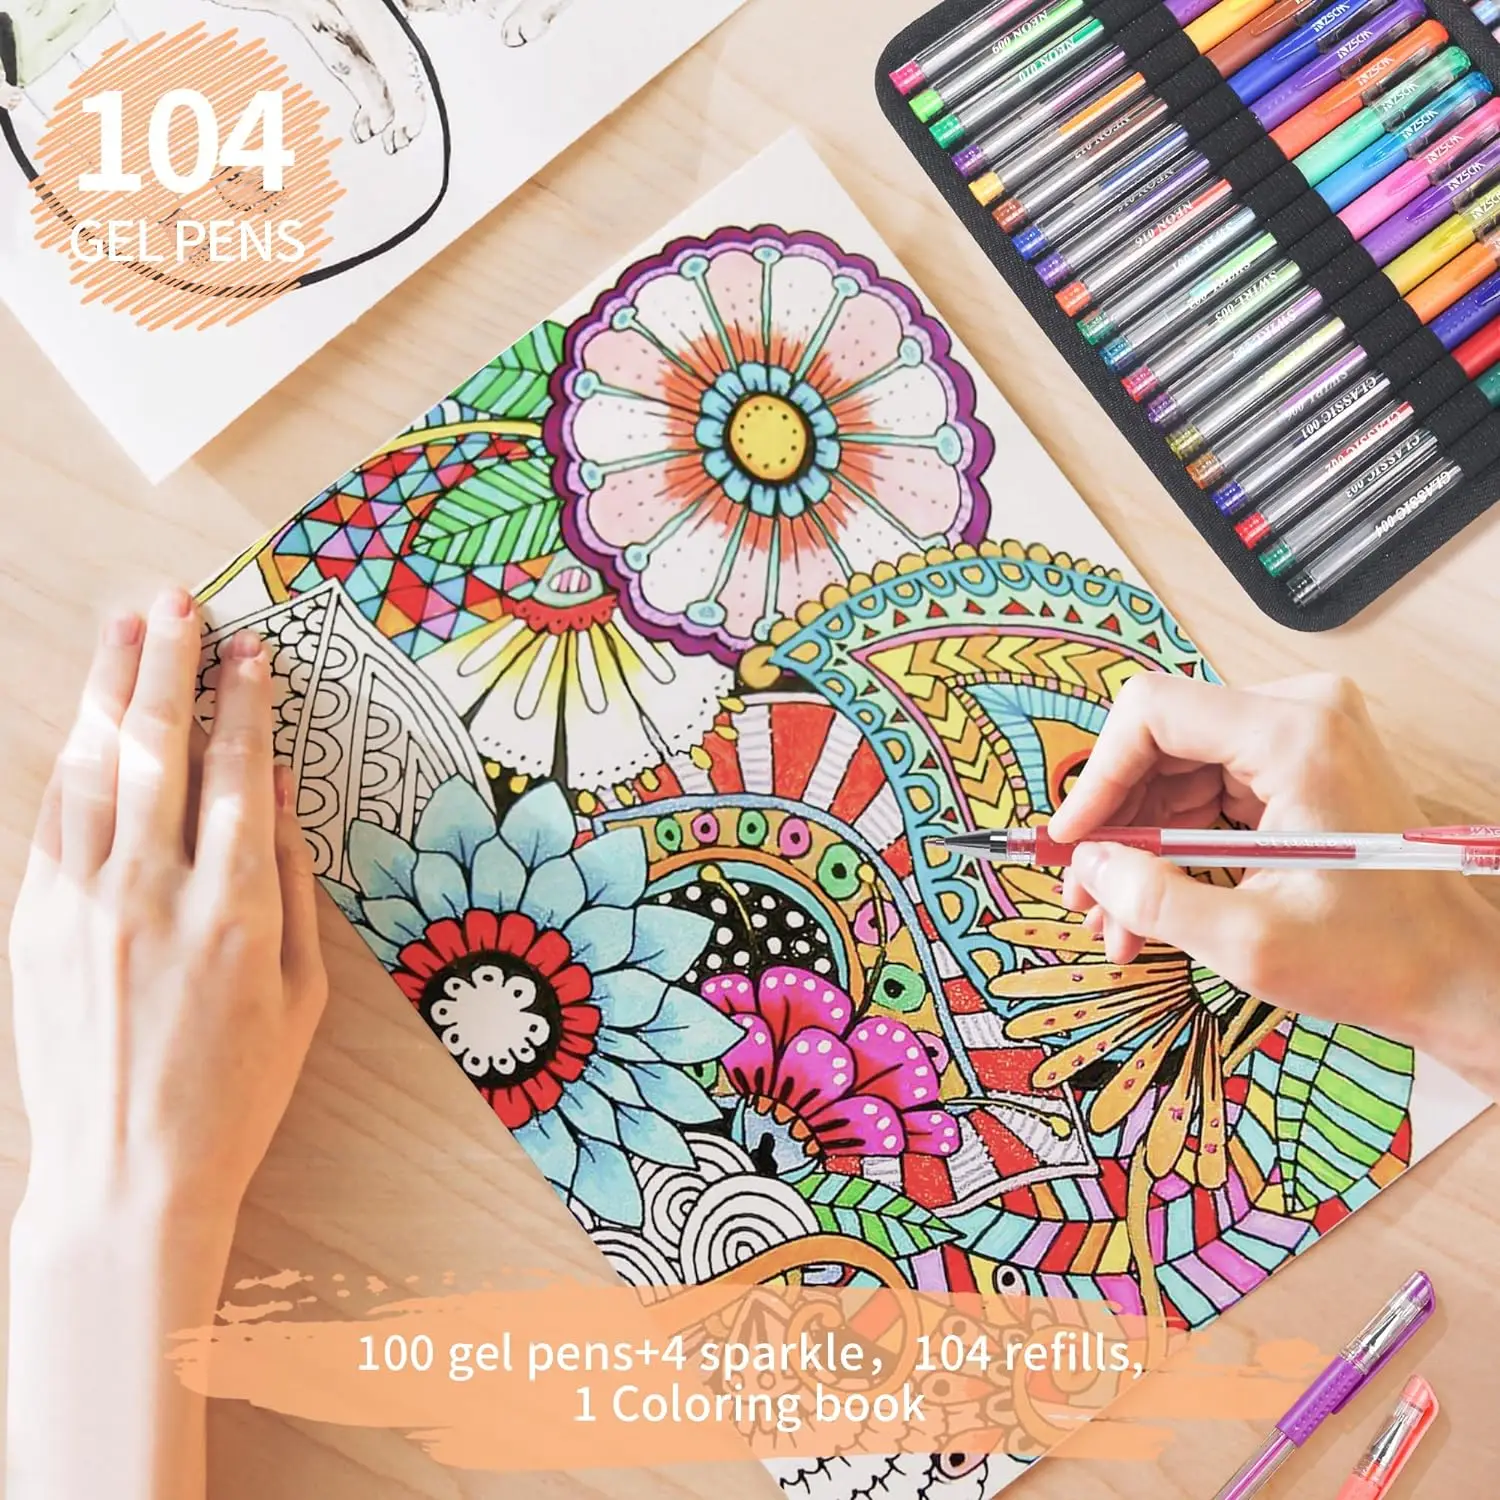 208 opakowanie brokatowych zestaw długopisów żelowych, 100 kolory długopisy to 100 brokatowe długopisy, 4 metaliczne błyszczące pióra z 100 wkładami, płócienna torba